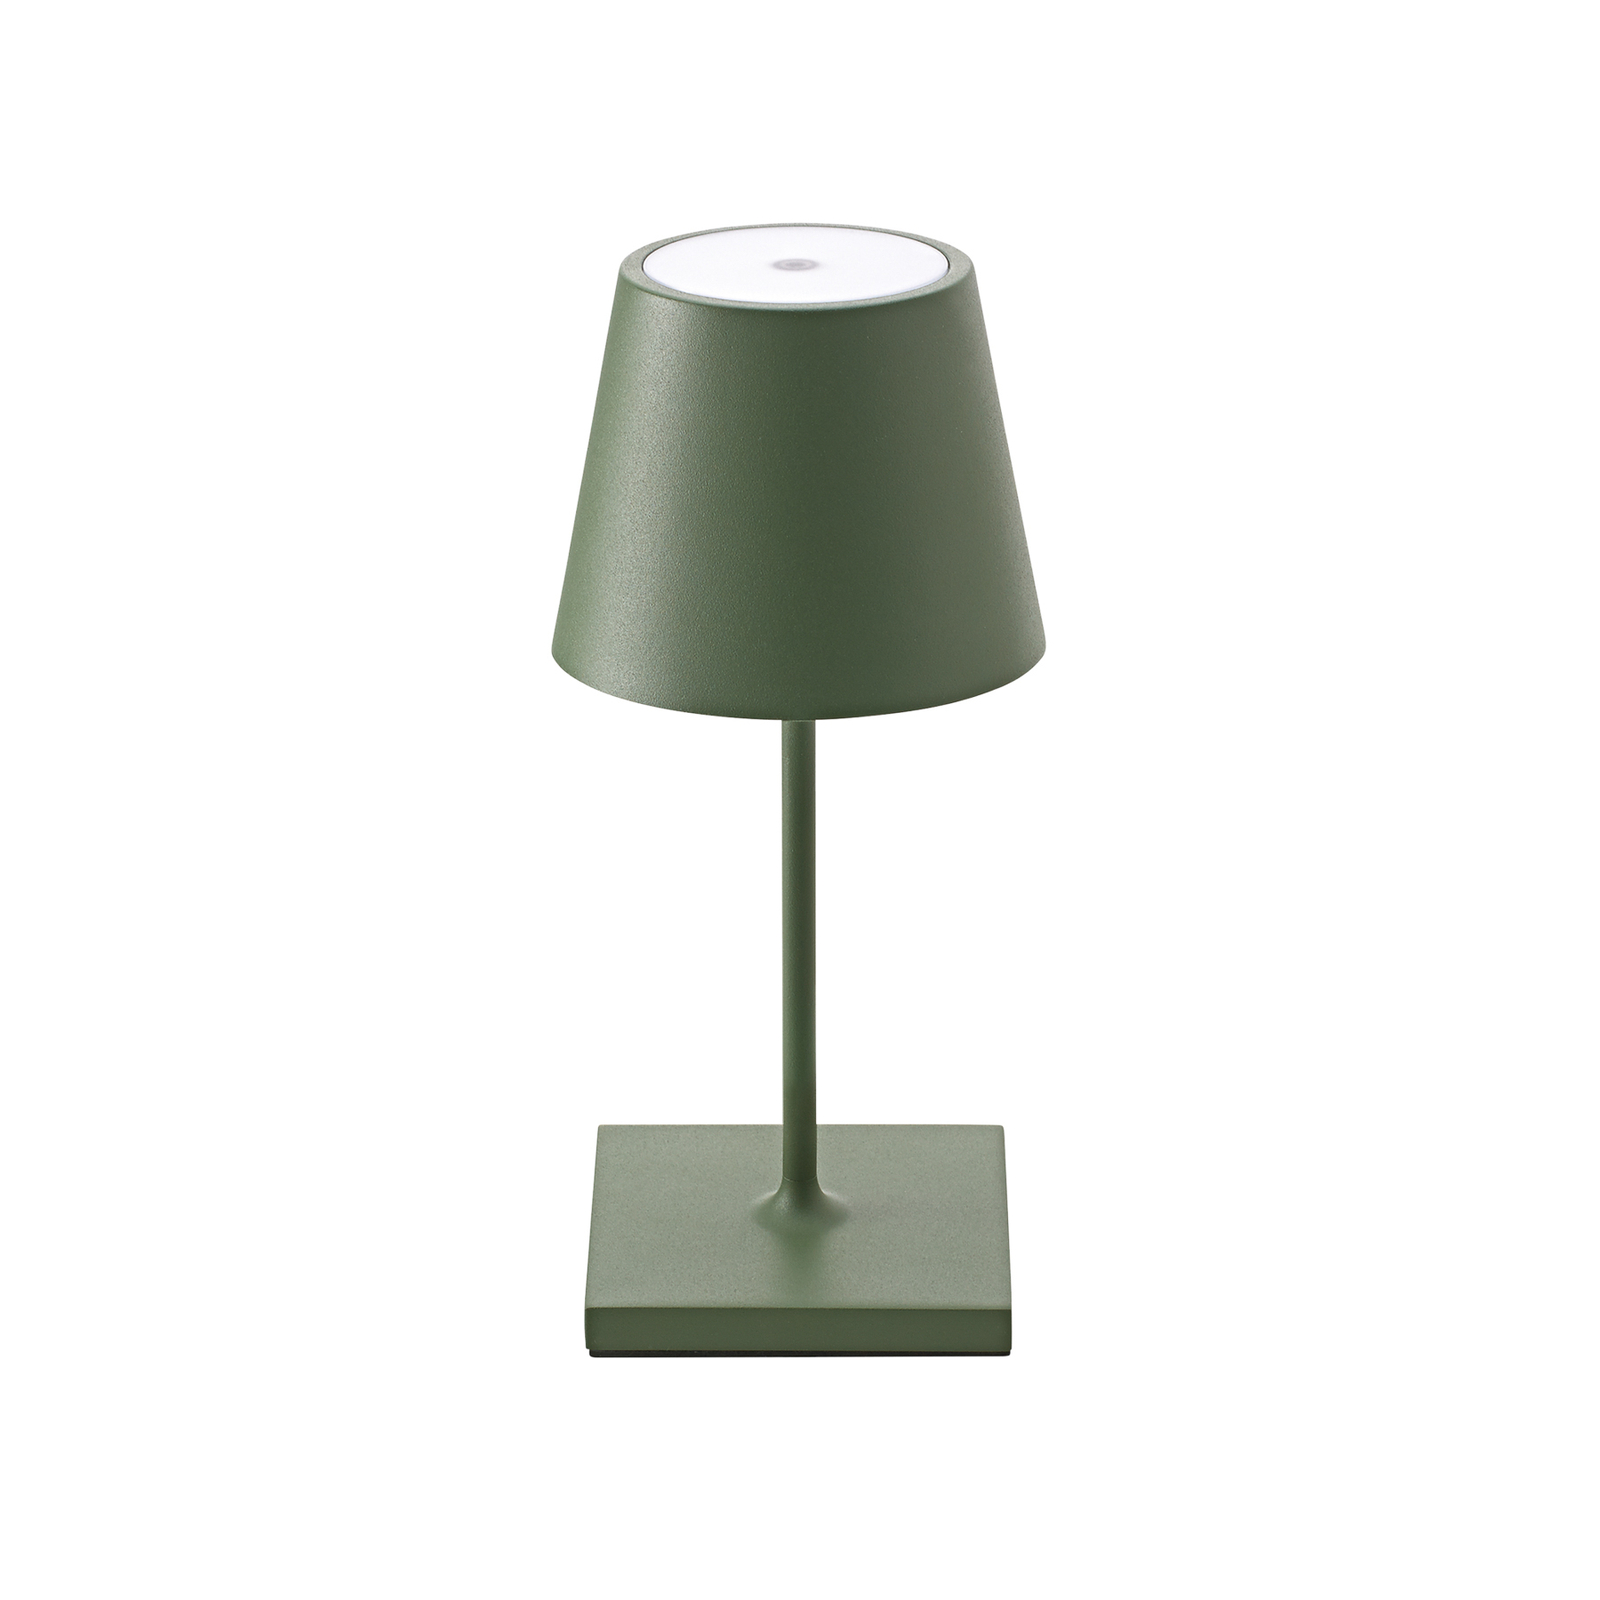 Nuindie mini LED dobíjecí stolní lampa, kulatá, USB-C, jedlová zeleň